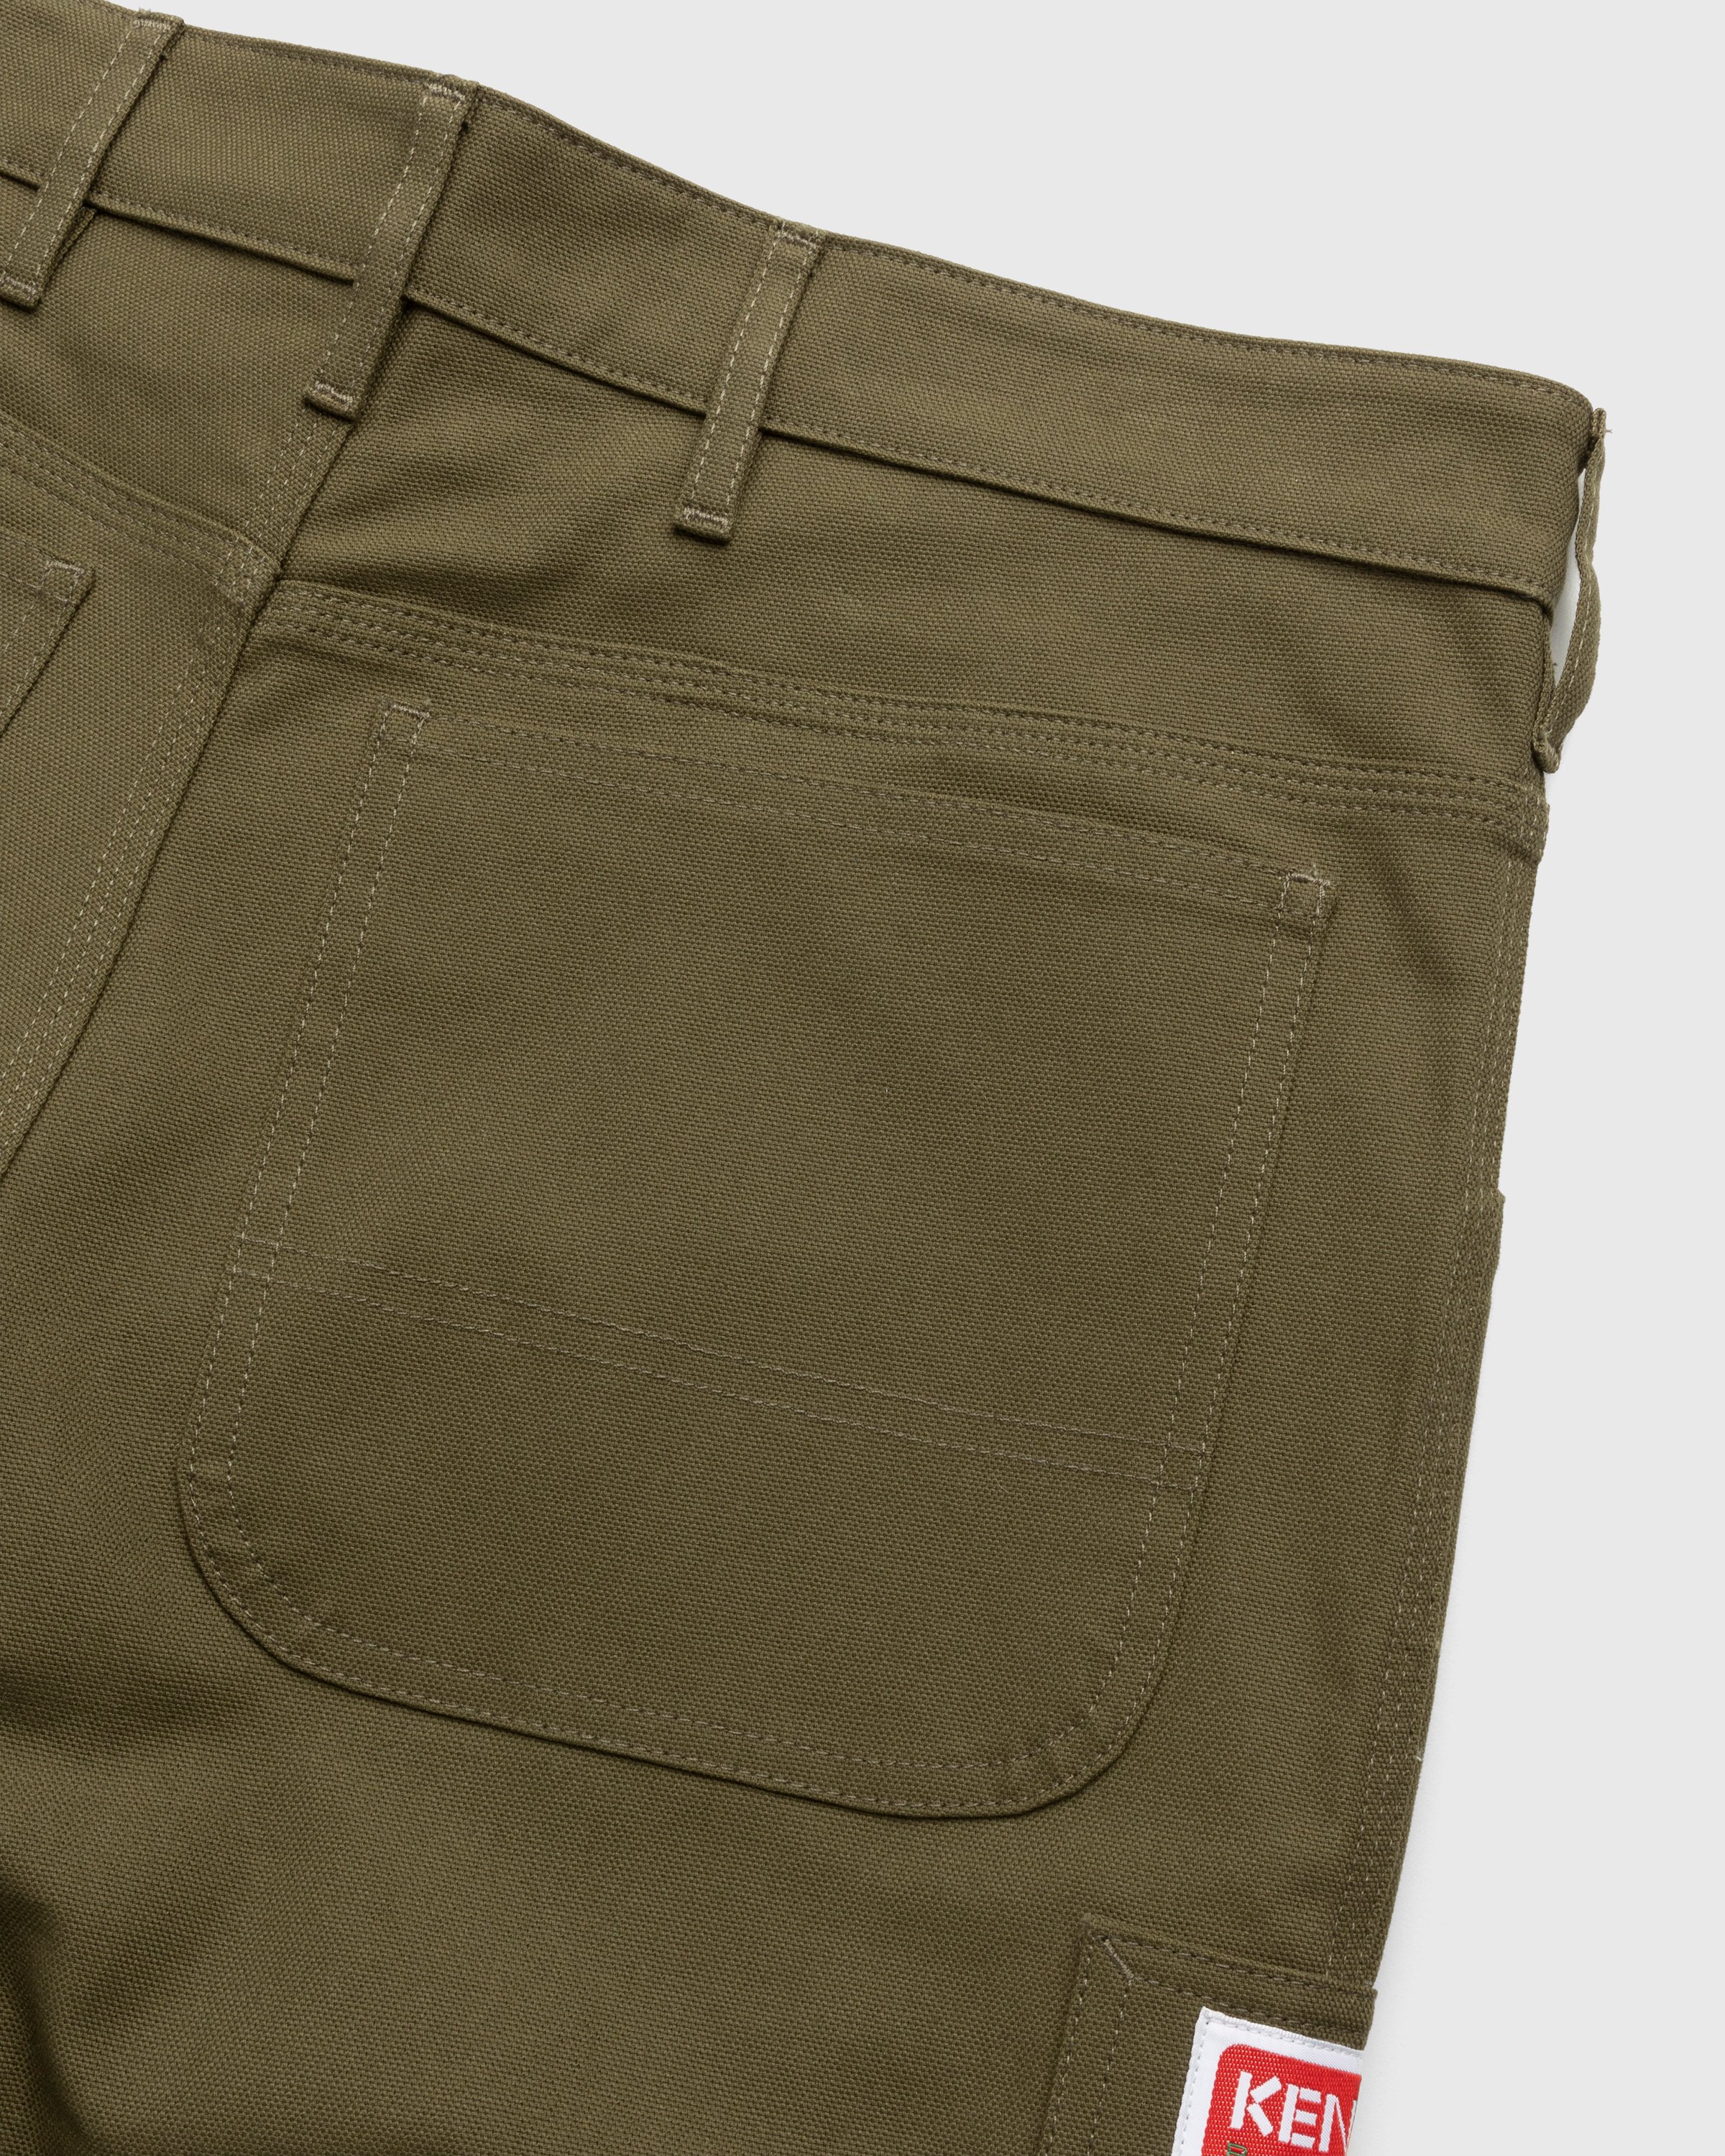 Kenzo - Carpenter Pants Dark Khaki - Clothing - Green - Image 4